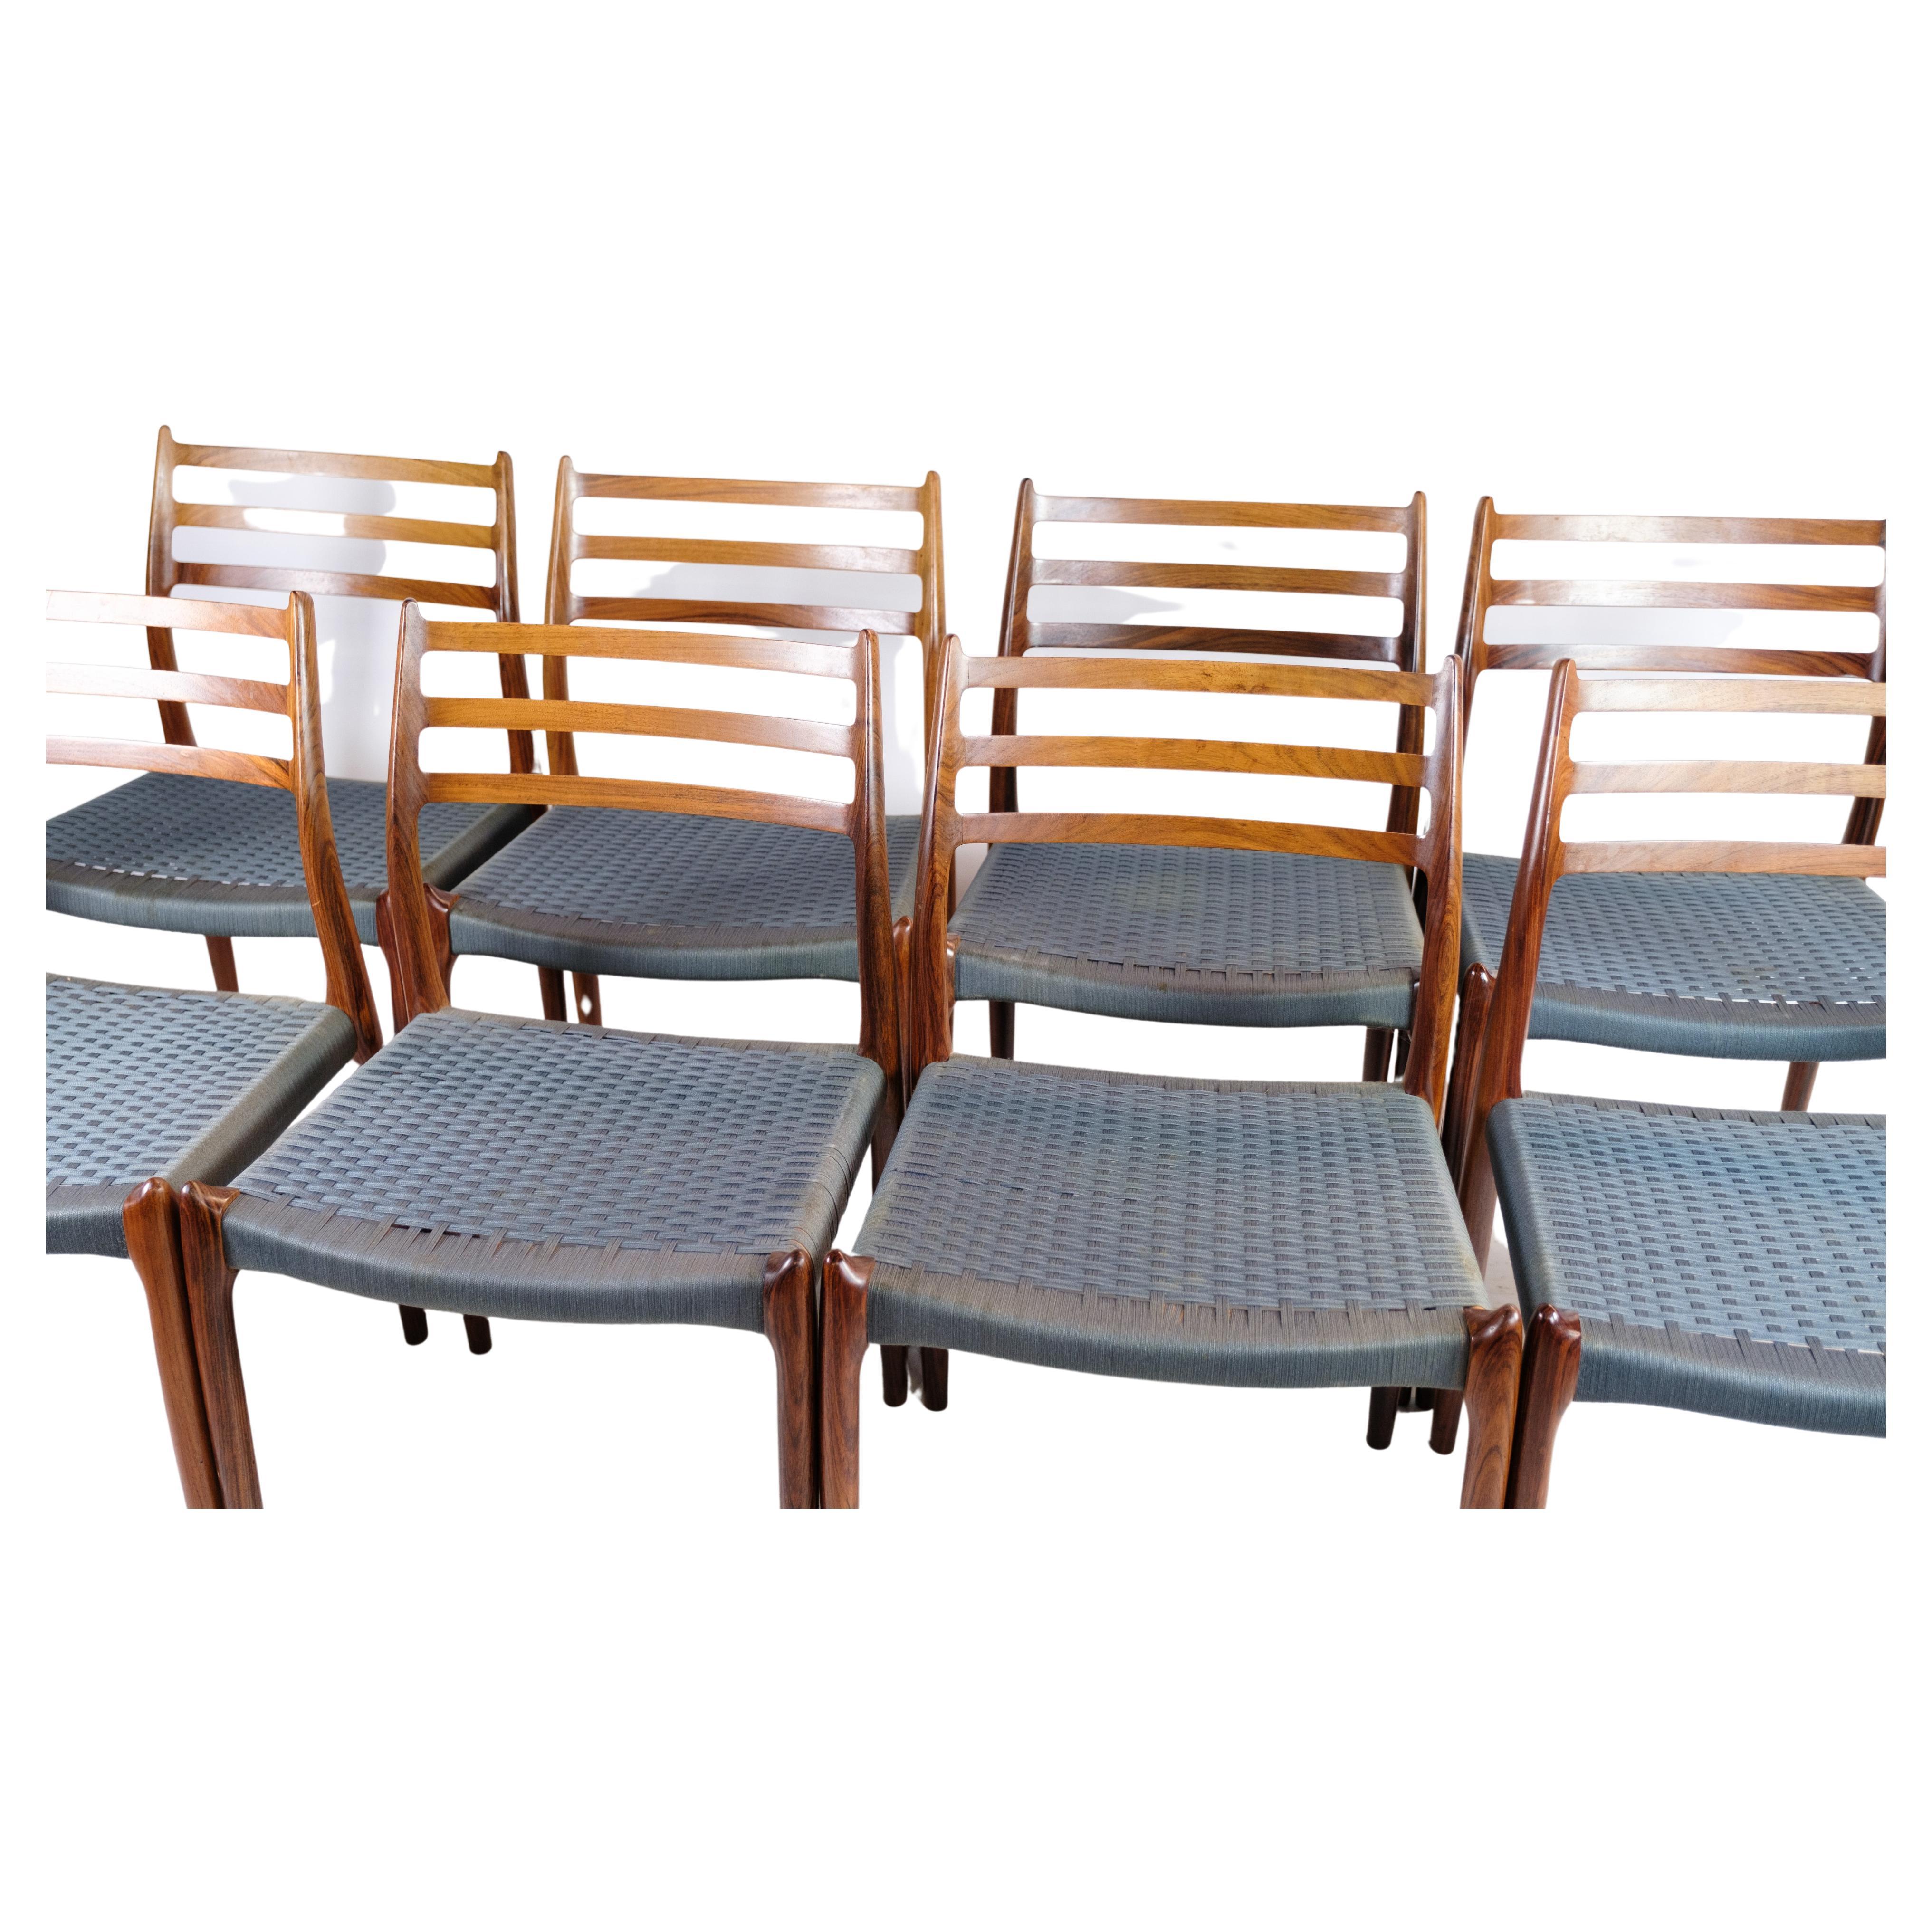 Ein Satz von acht Esszimmerstühlen, Modell NO 78, sorgfältig entworfen von dem bekannten dänischen Möbeldesigner N.O. Møller und fachmännisch hergestellt von J.L. Møller Møbelfabrik in den 1960er Jahren. Diese exquisiten Stühle sind aus reichem